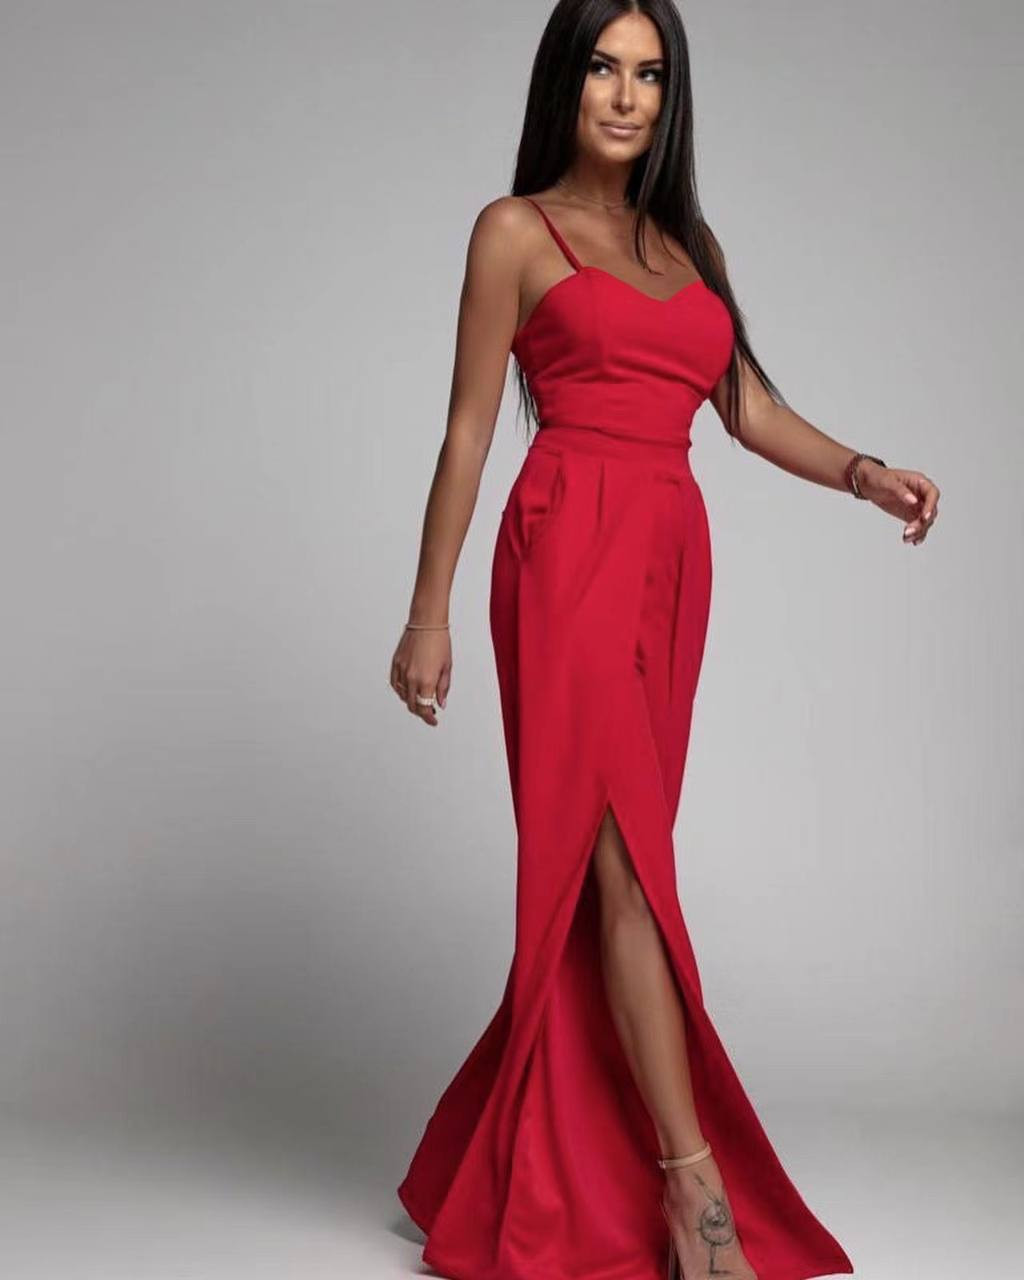 Γυναικεία ολόσωμη φόρμα με σκίσιμο 4845 κόκκινο